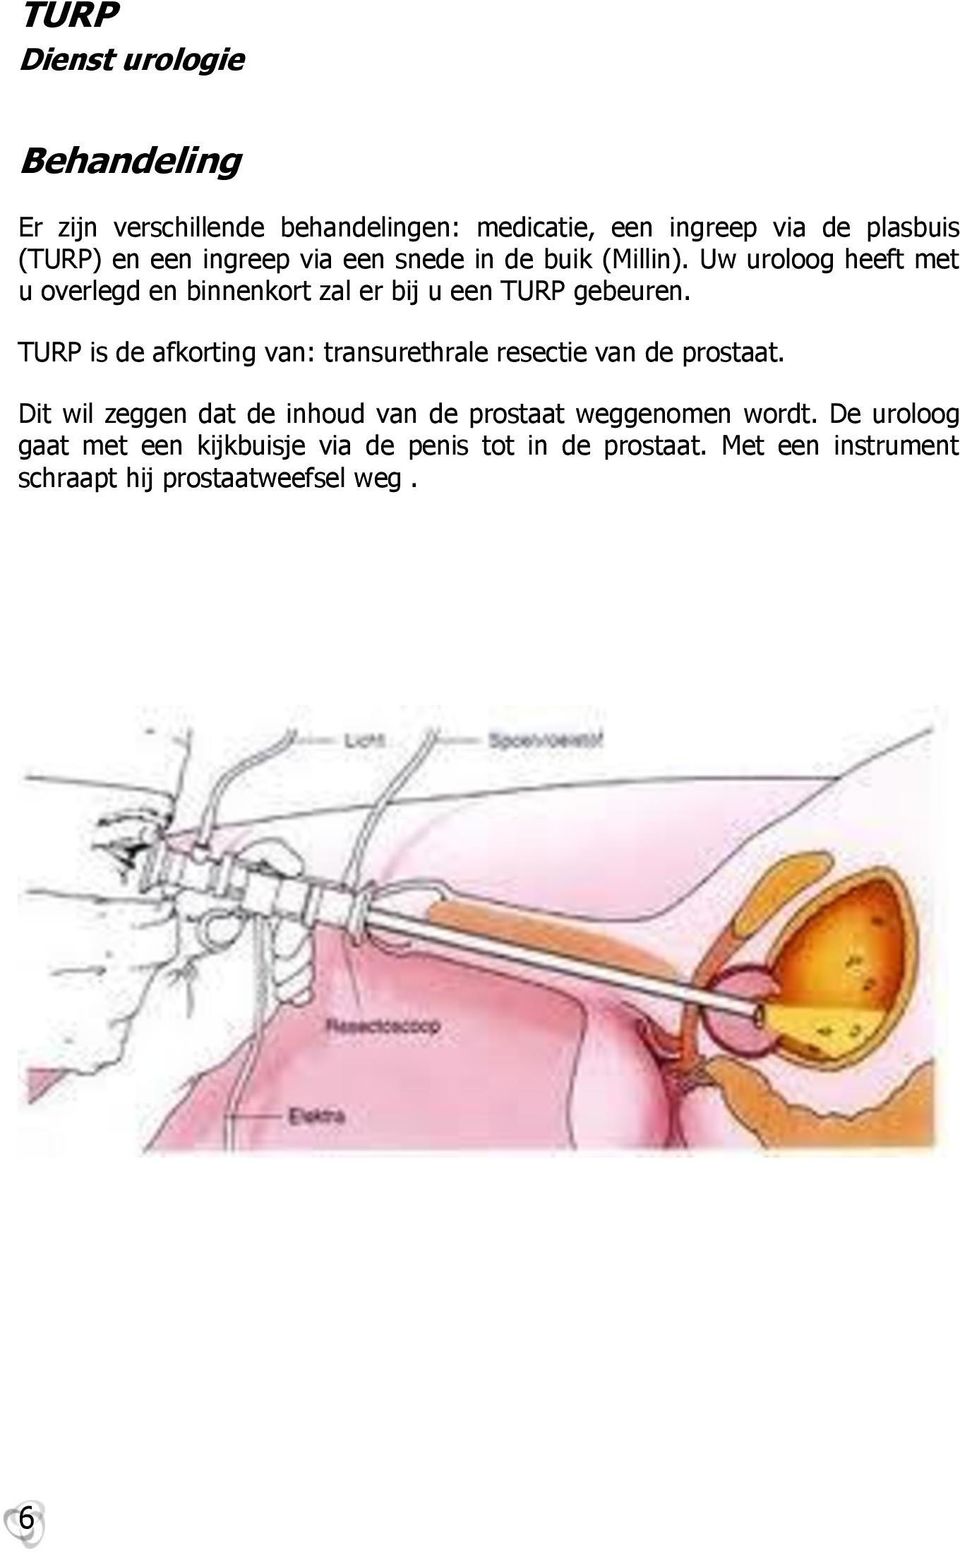 TURP is de afkrting van: transurethrale resectie van de prstaat.